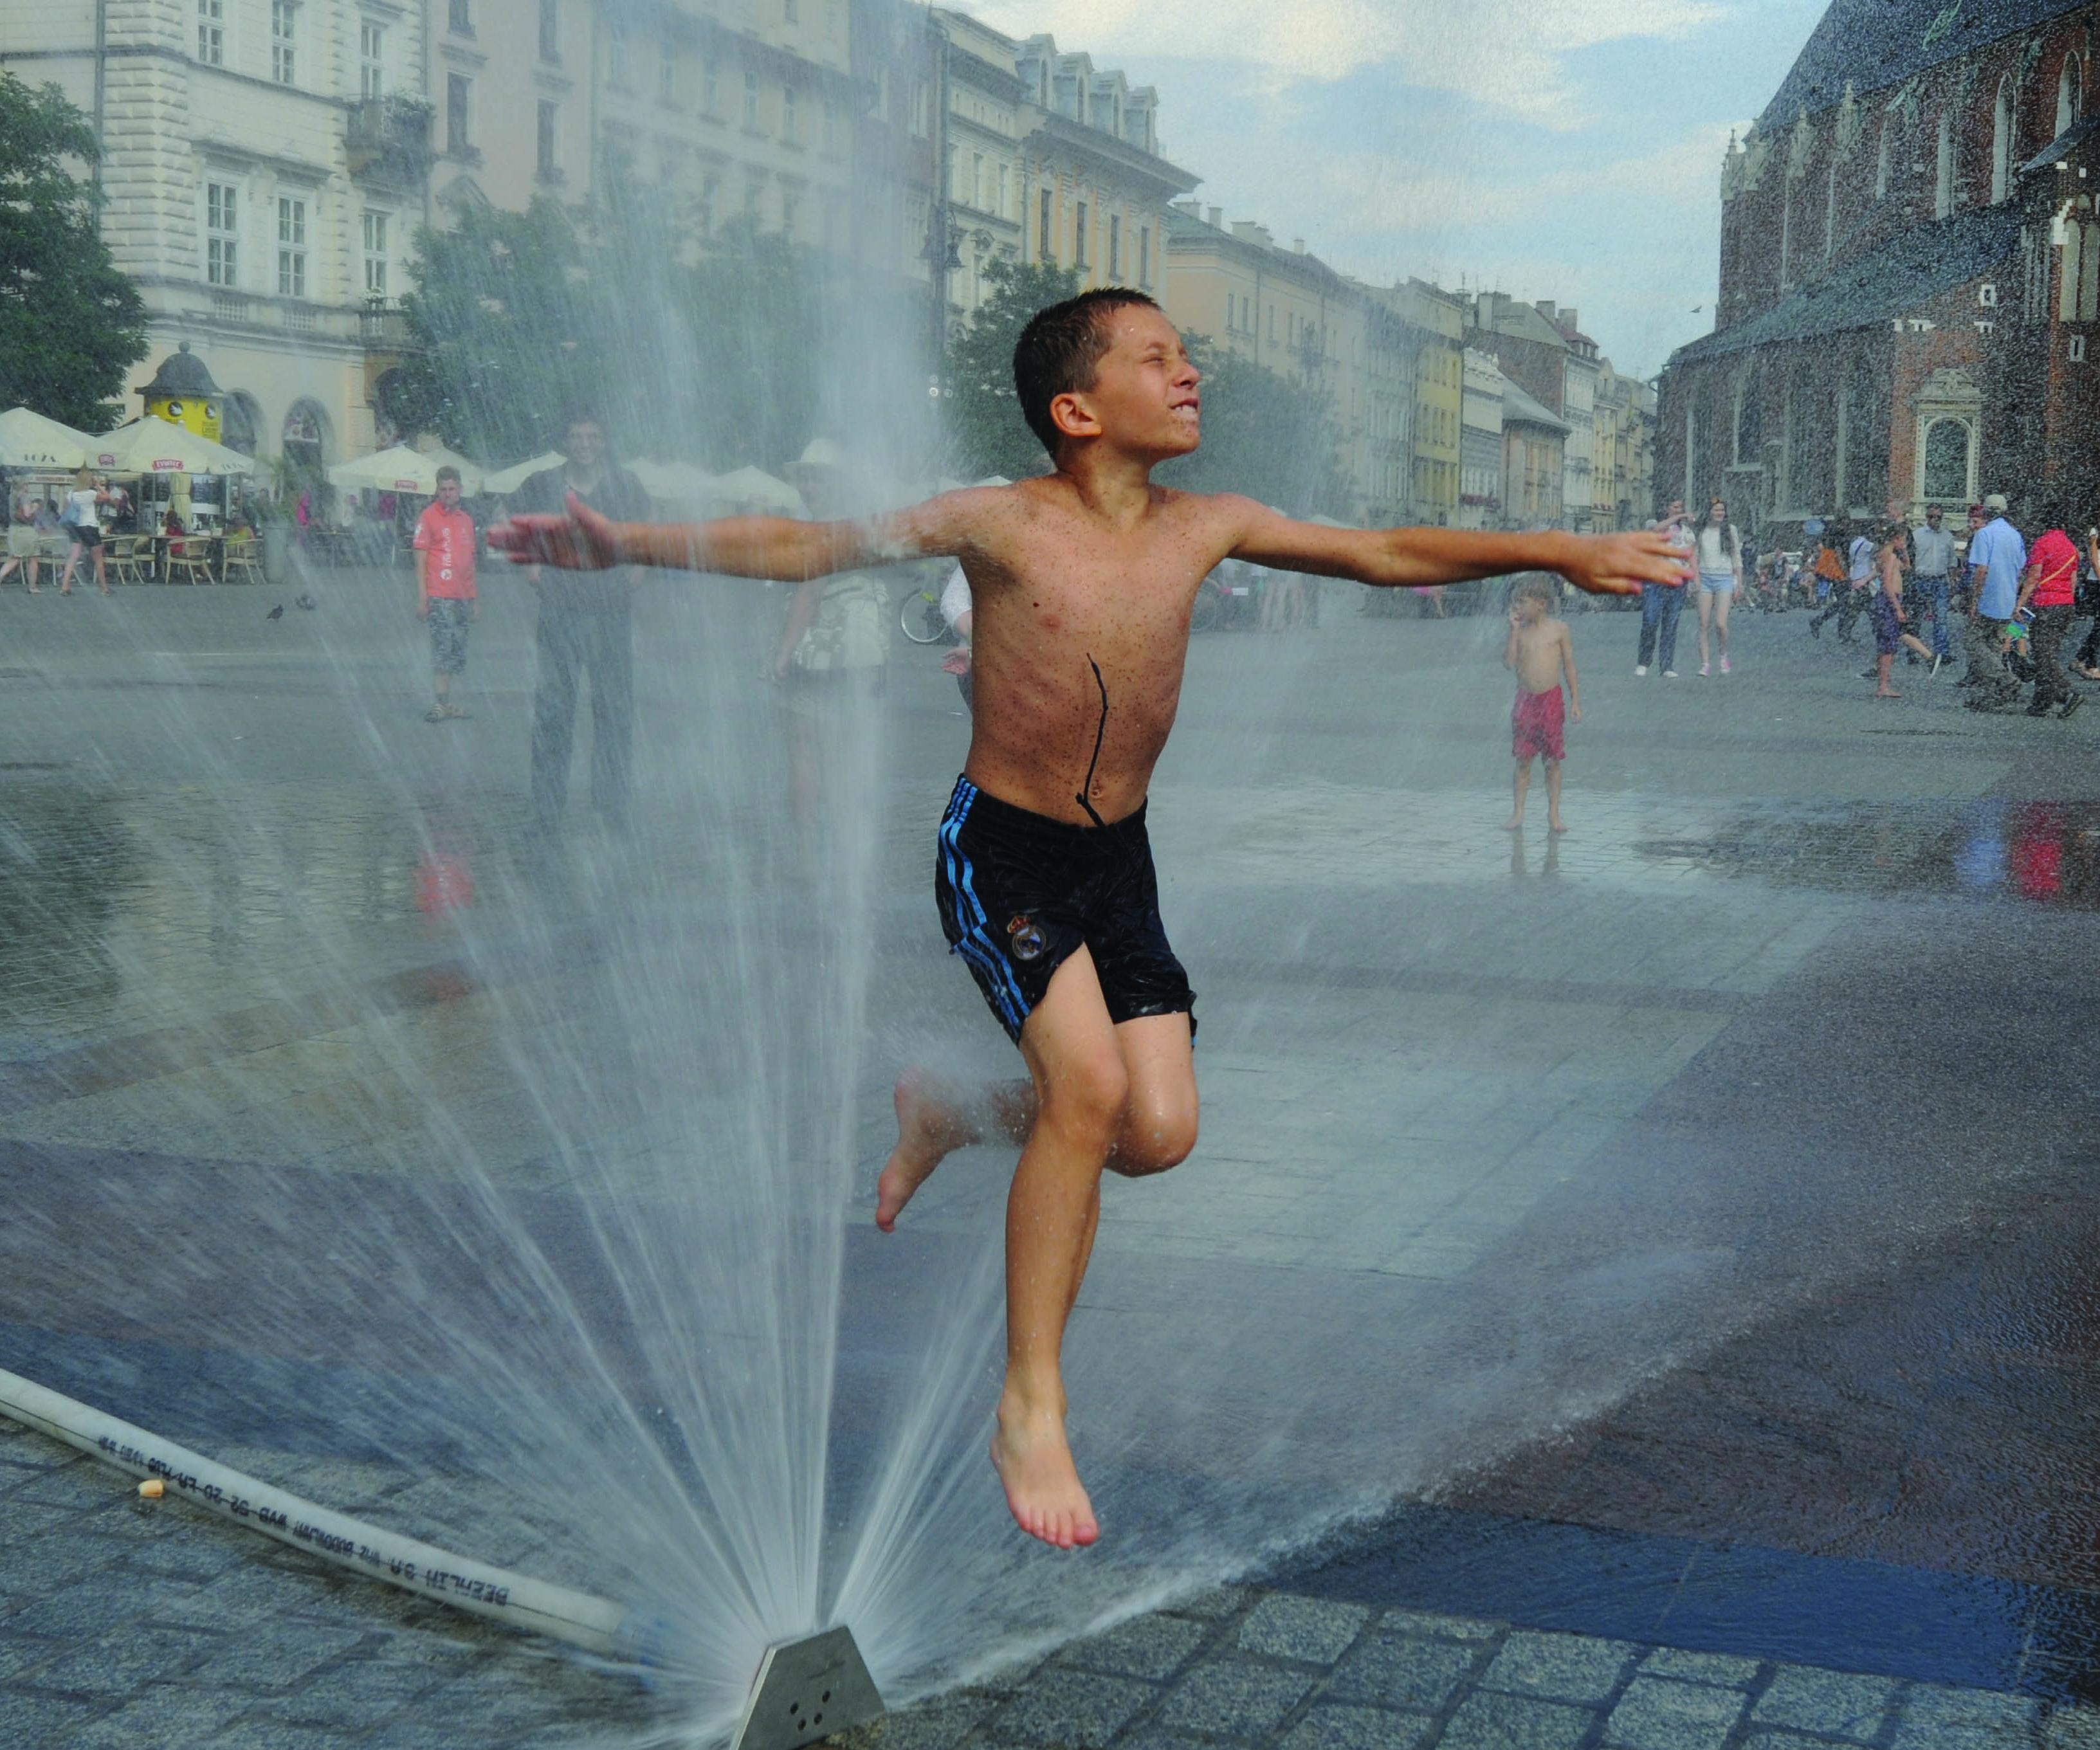 Fotografia na rua de criança em calções de banho a saltar por cima de repuxo